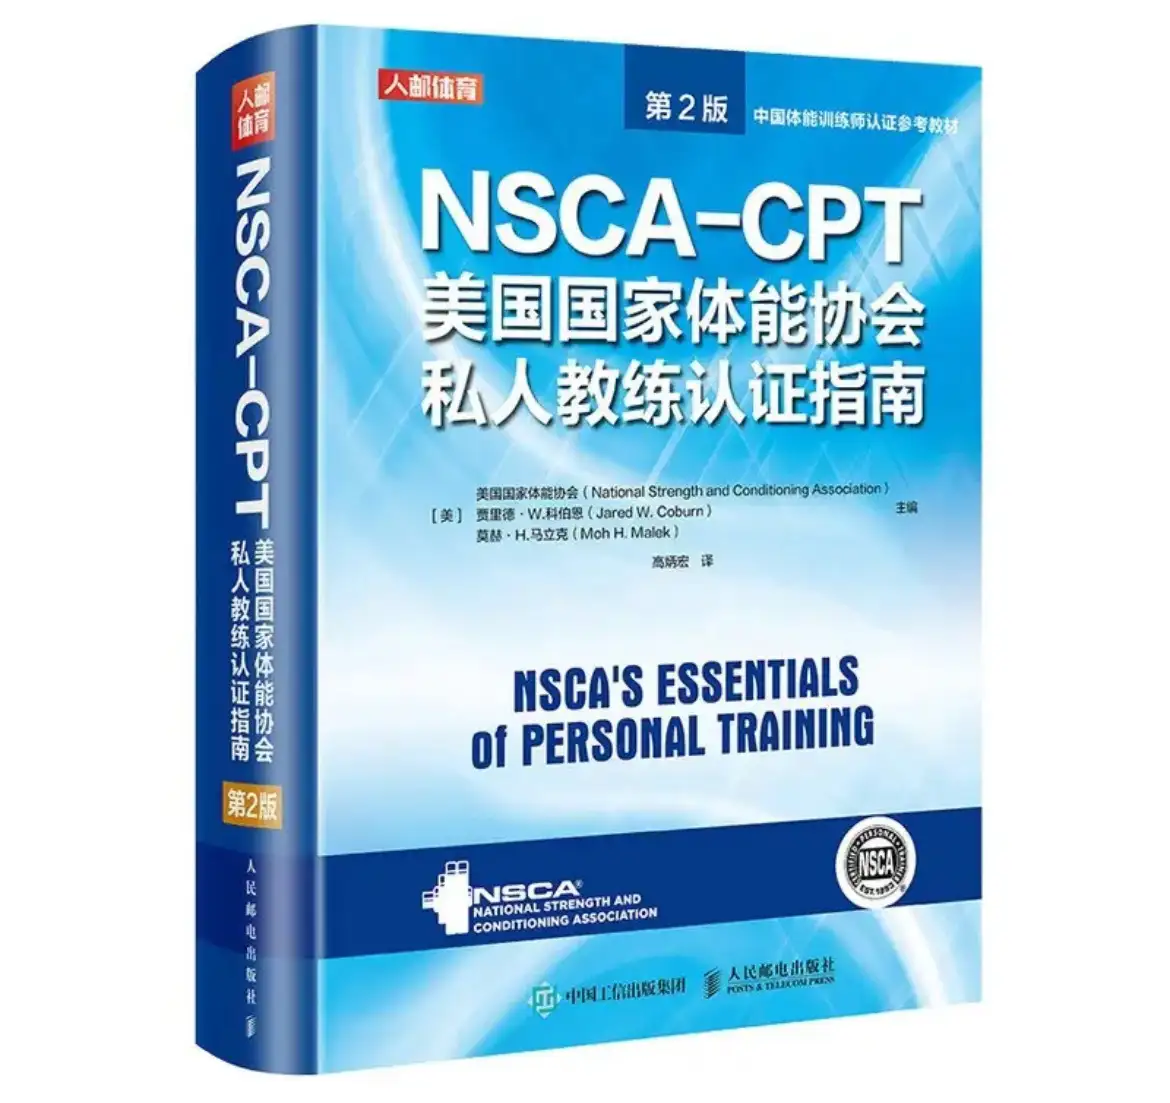 想自学备考nsca-cpt用哪本教材？ - 知乎